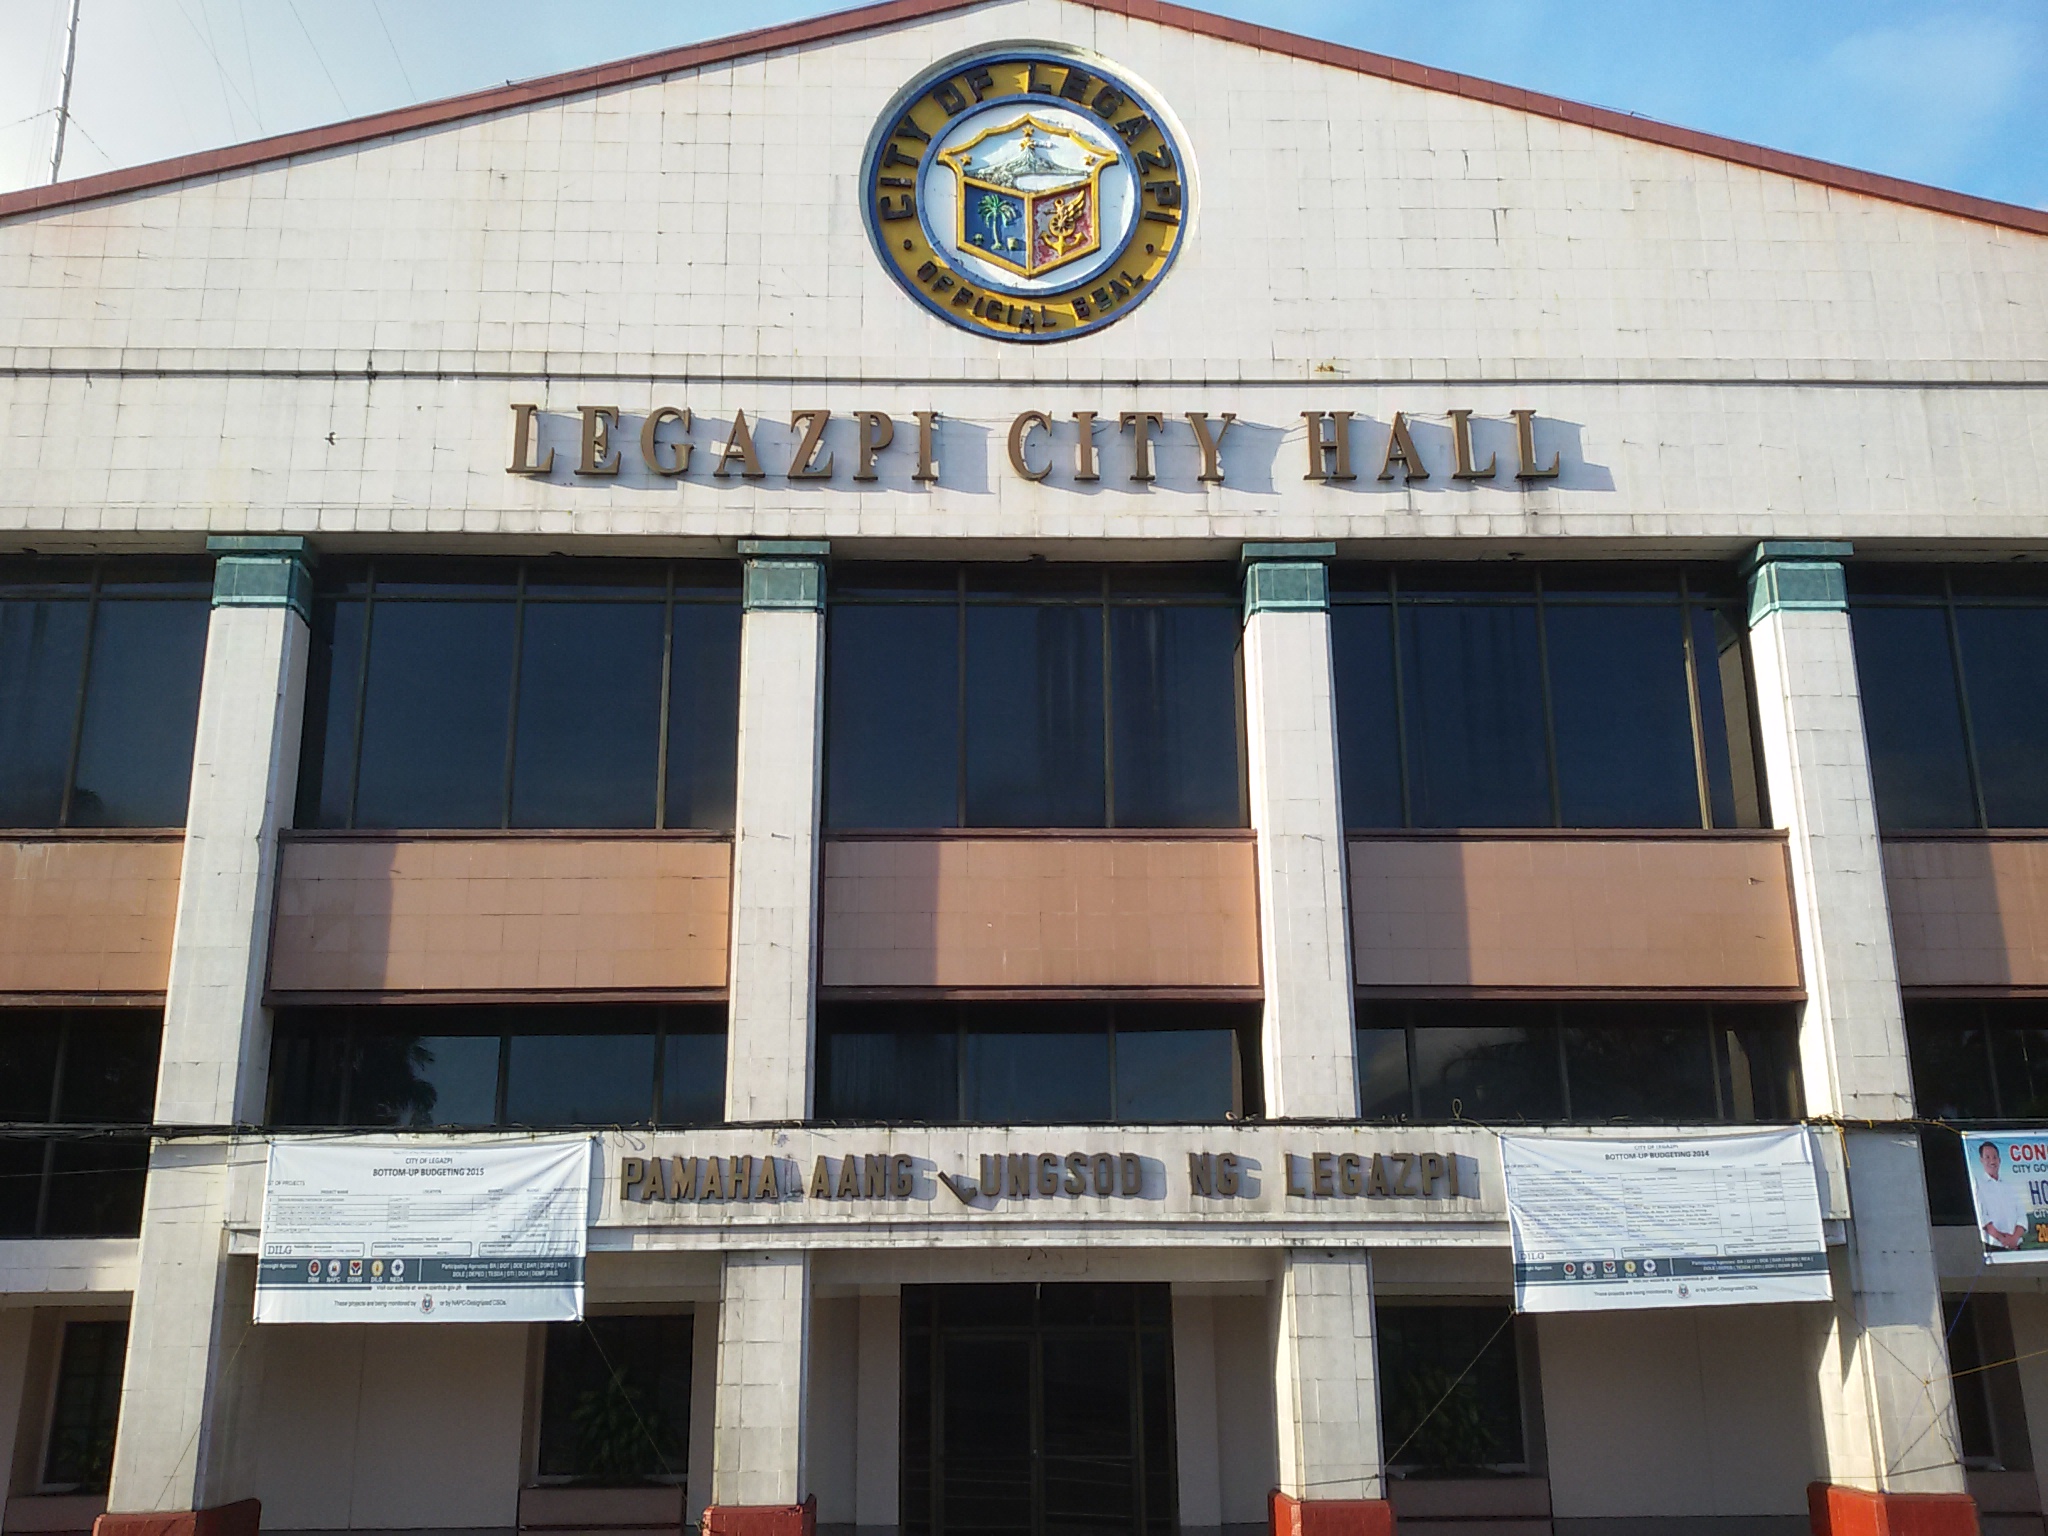 Legazpi City Hall - Legazpi